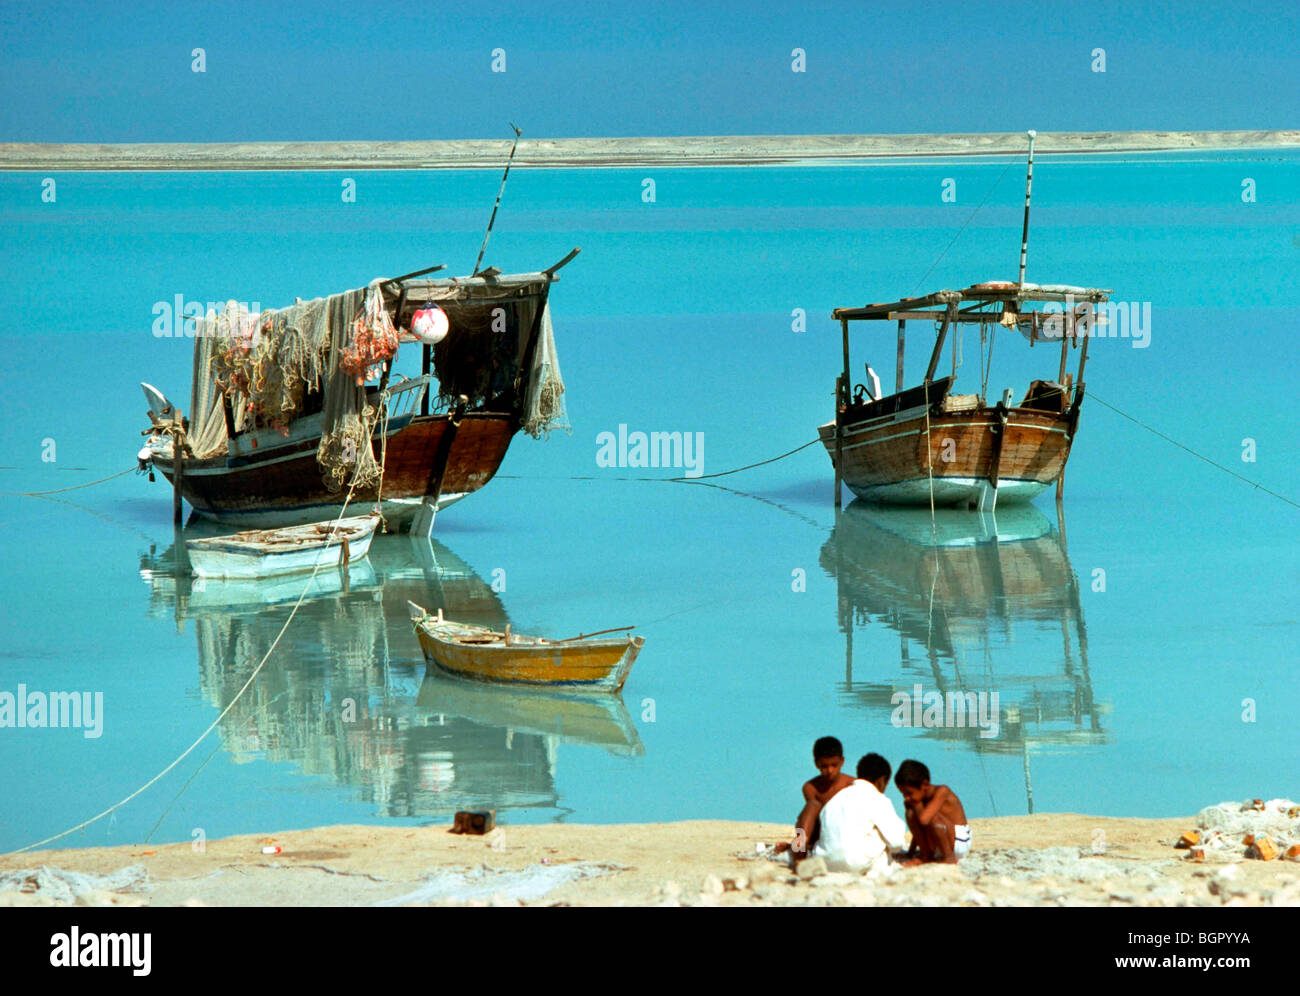 Daus in al Ruwais, Katar Archivbild der Fischerei Daus 1975 Stockfoto